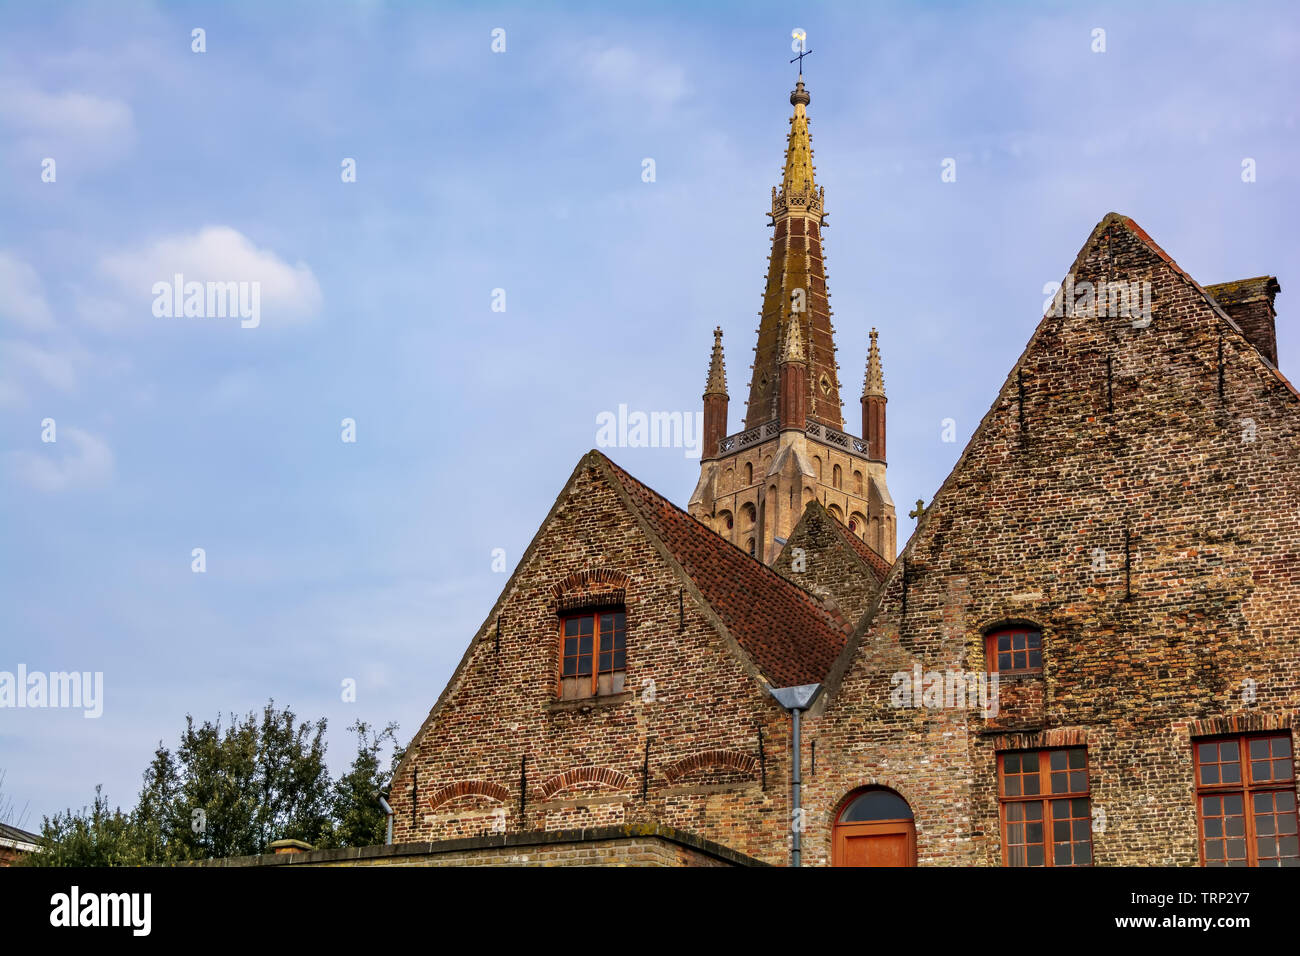 La Chiesa di Nostra Signora (Onze-Lieve-Vrouwekerk) torre visto dietro le case medioevali contro il cielo blu. Questa torre gotica è 122.3 metri di altezza Foto Stock